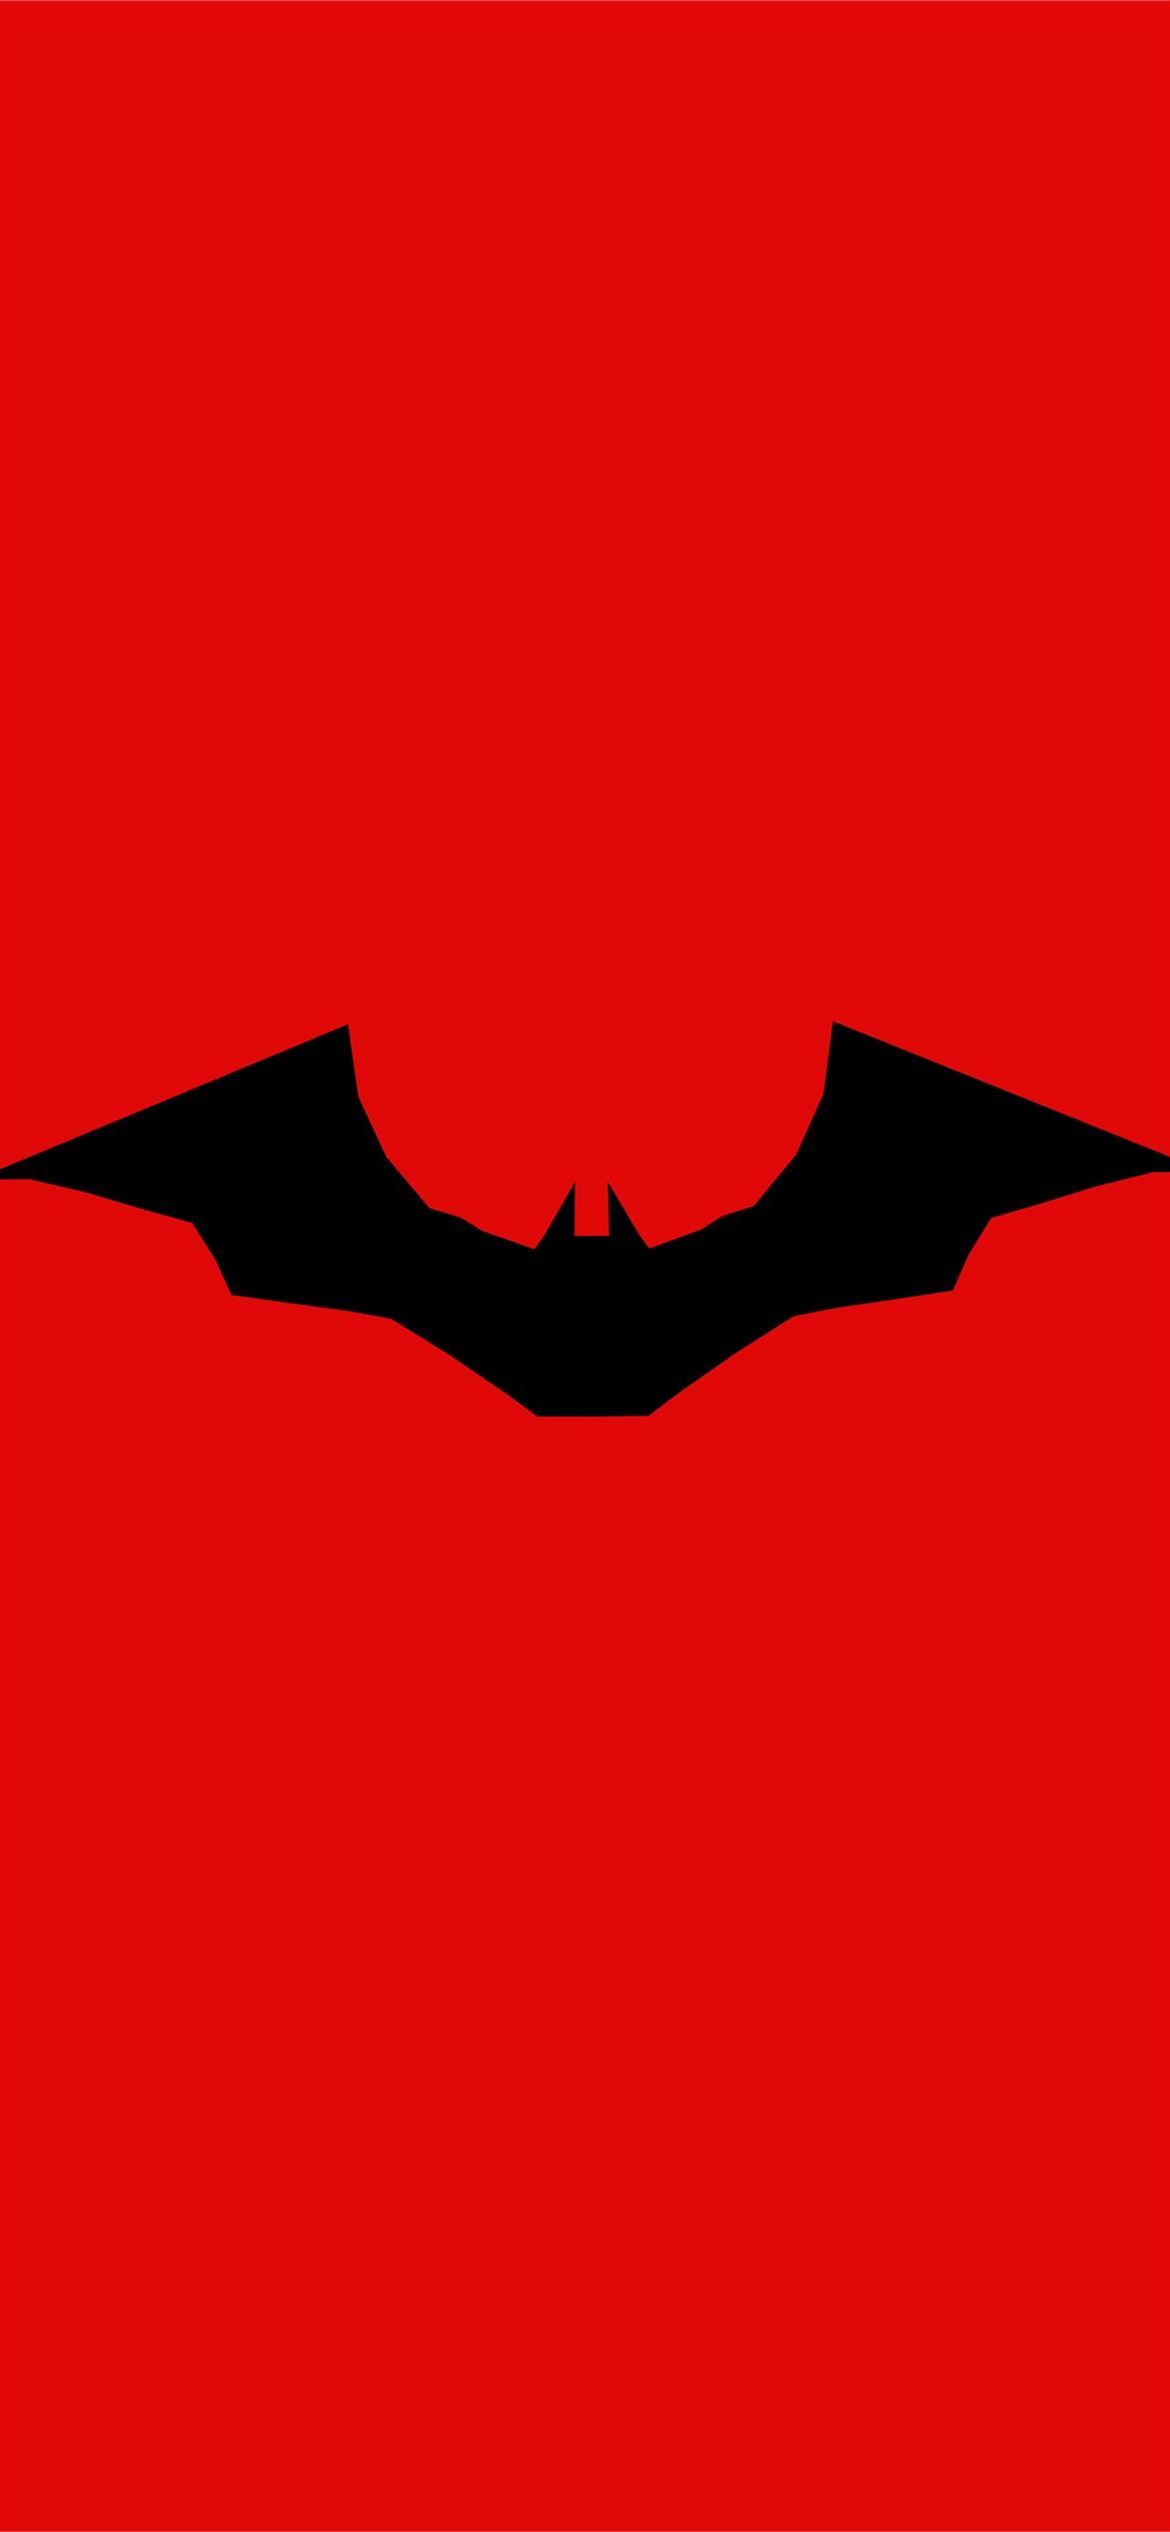 the batman 2021 logo 4k #TheBatman #batman #Superheroes #movies Movies k #logo. Mandala wallpaper, Wallpaper, Batman